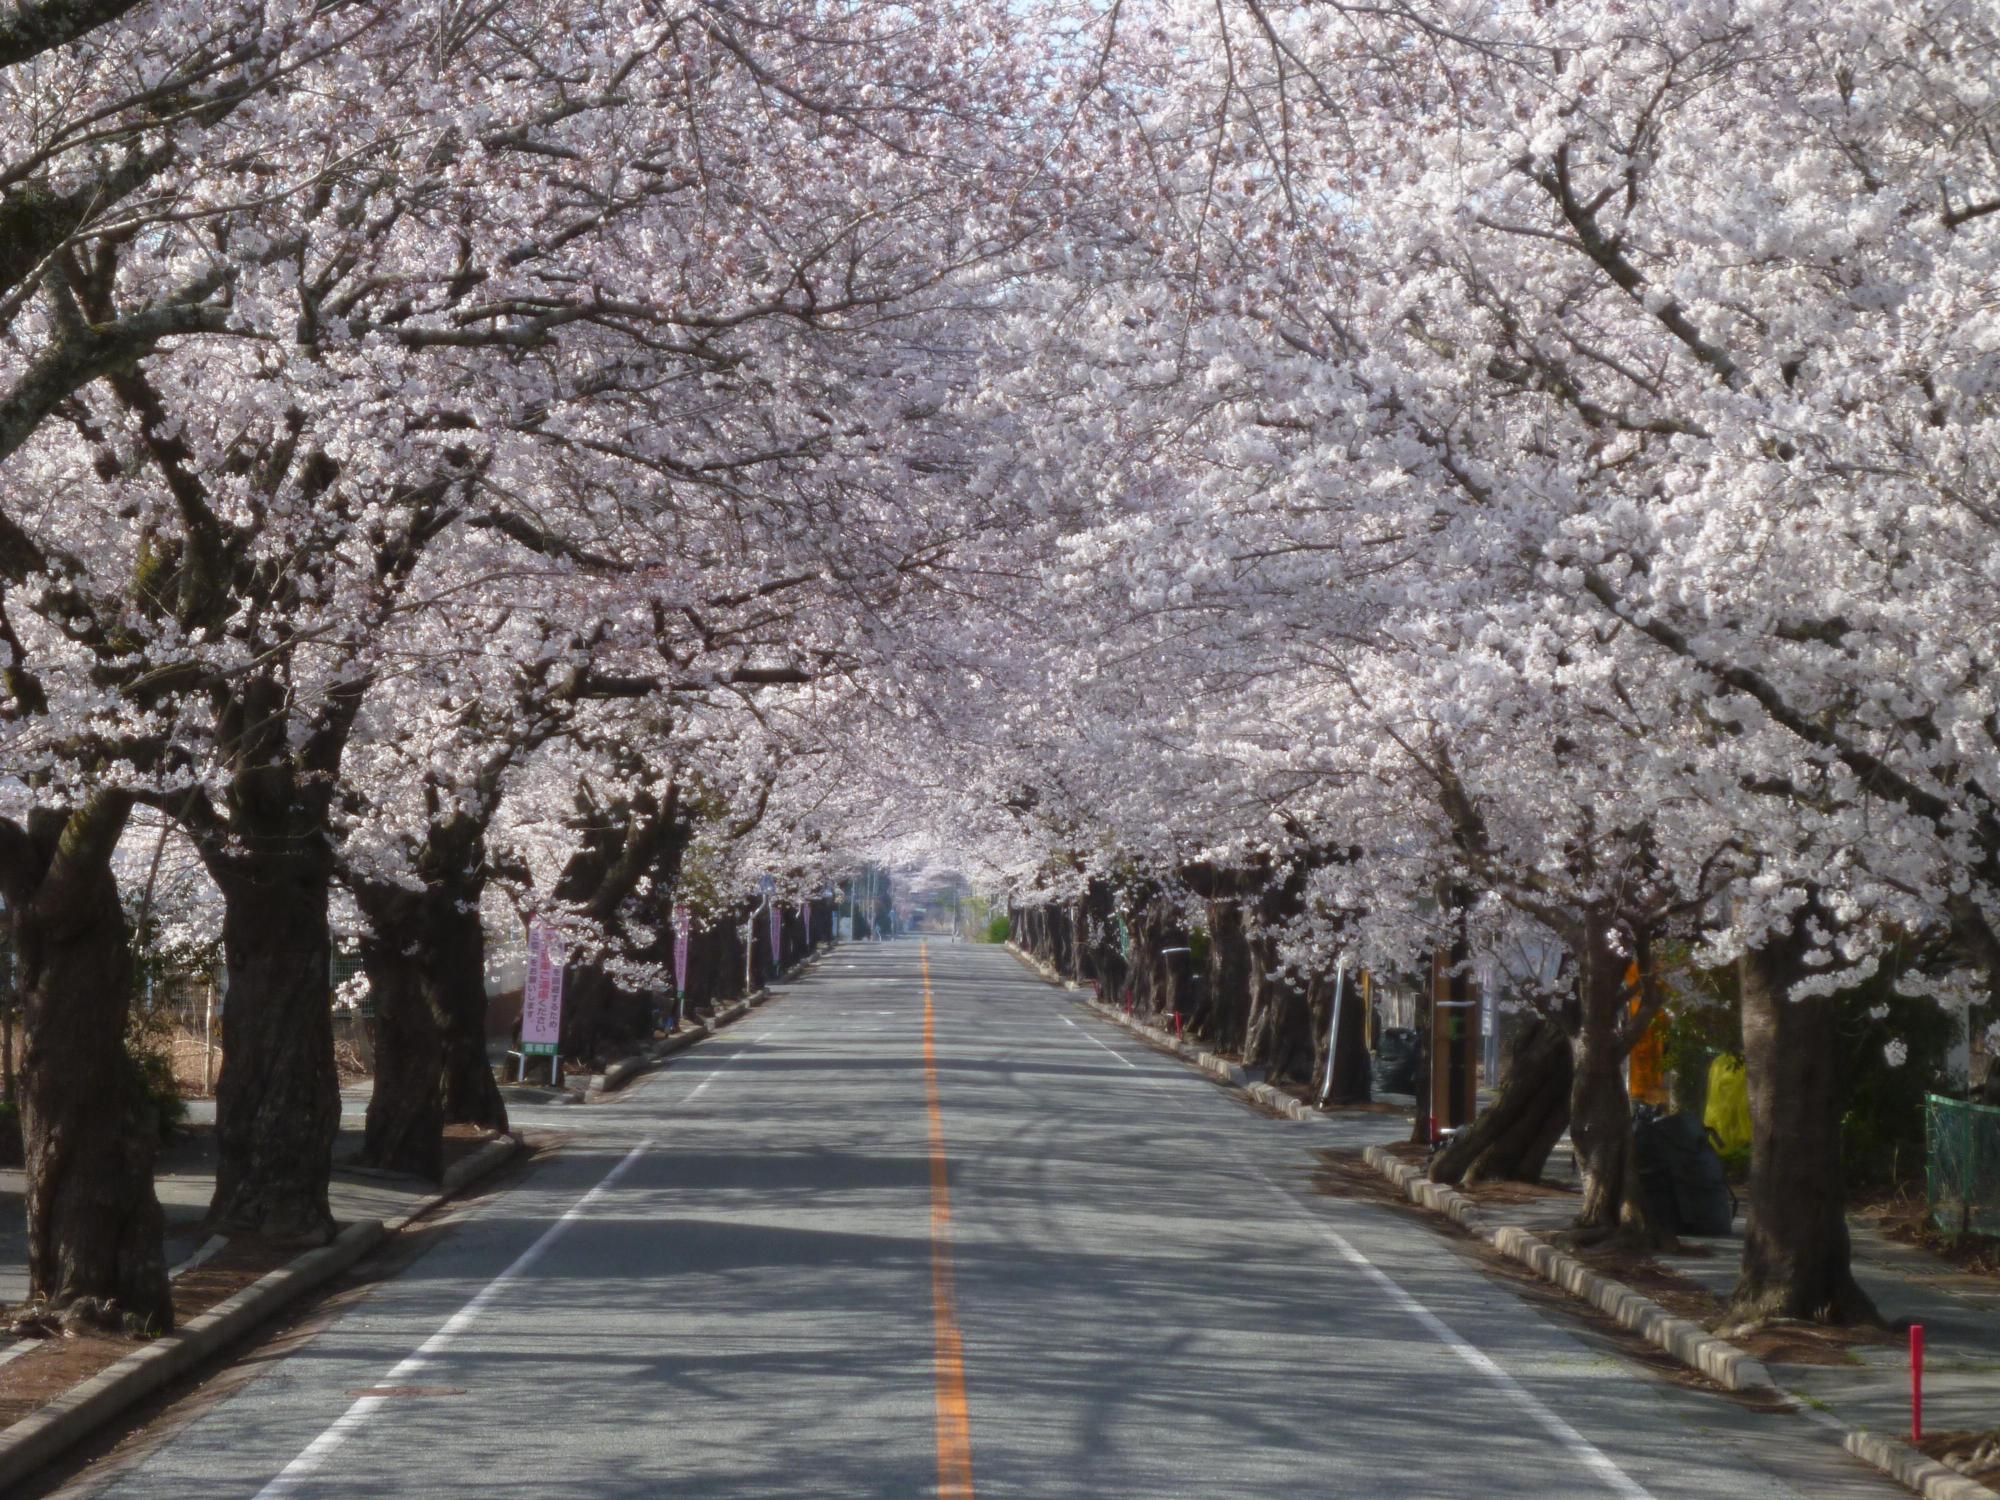 八間道路の両脇に咲く桜並木の写真